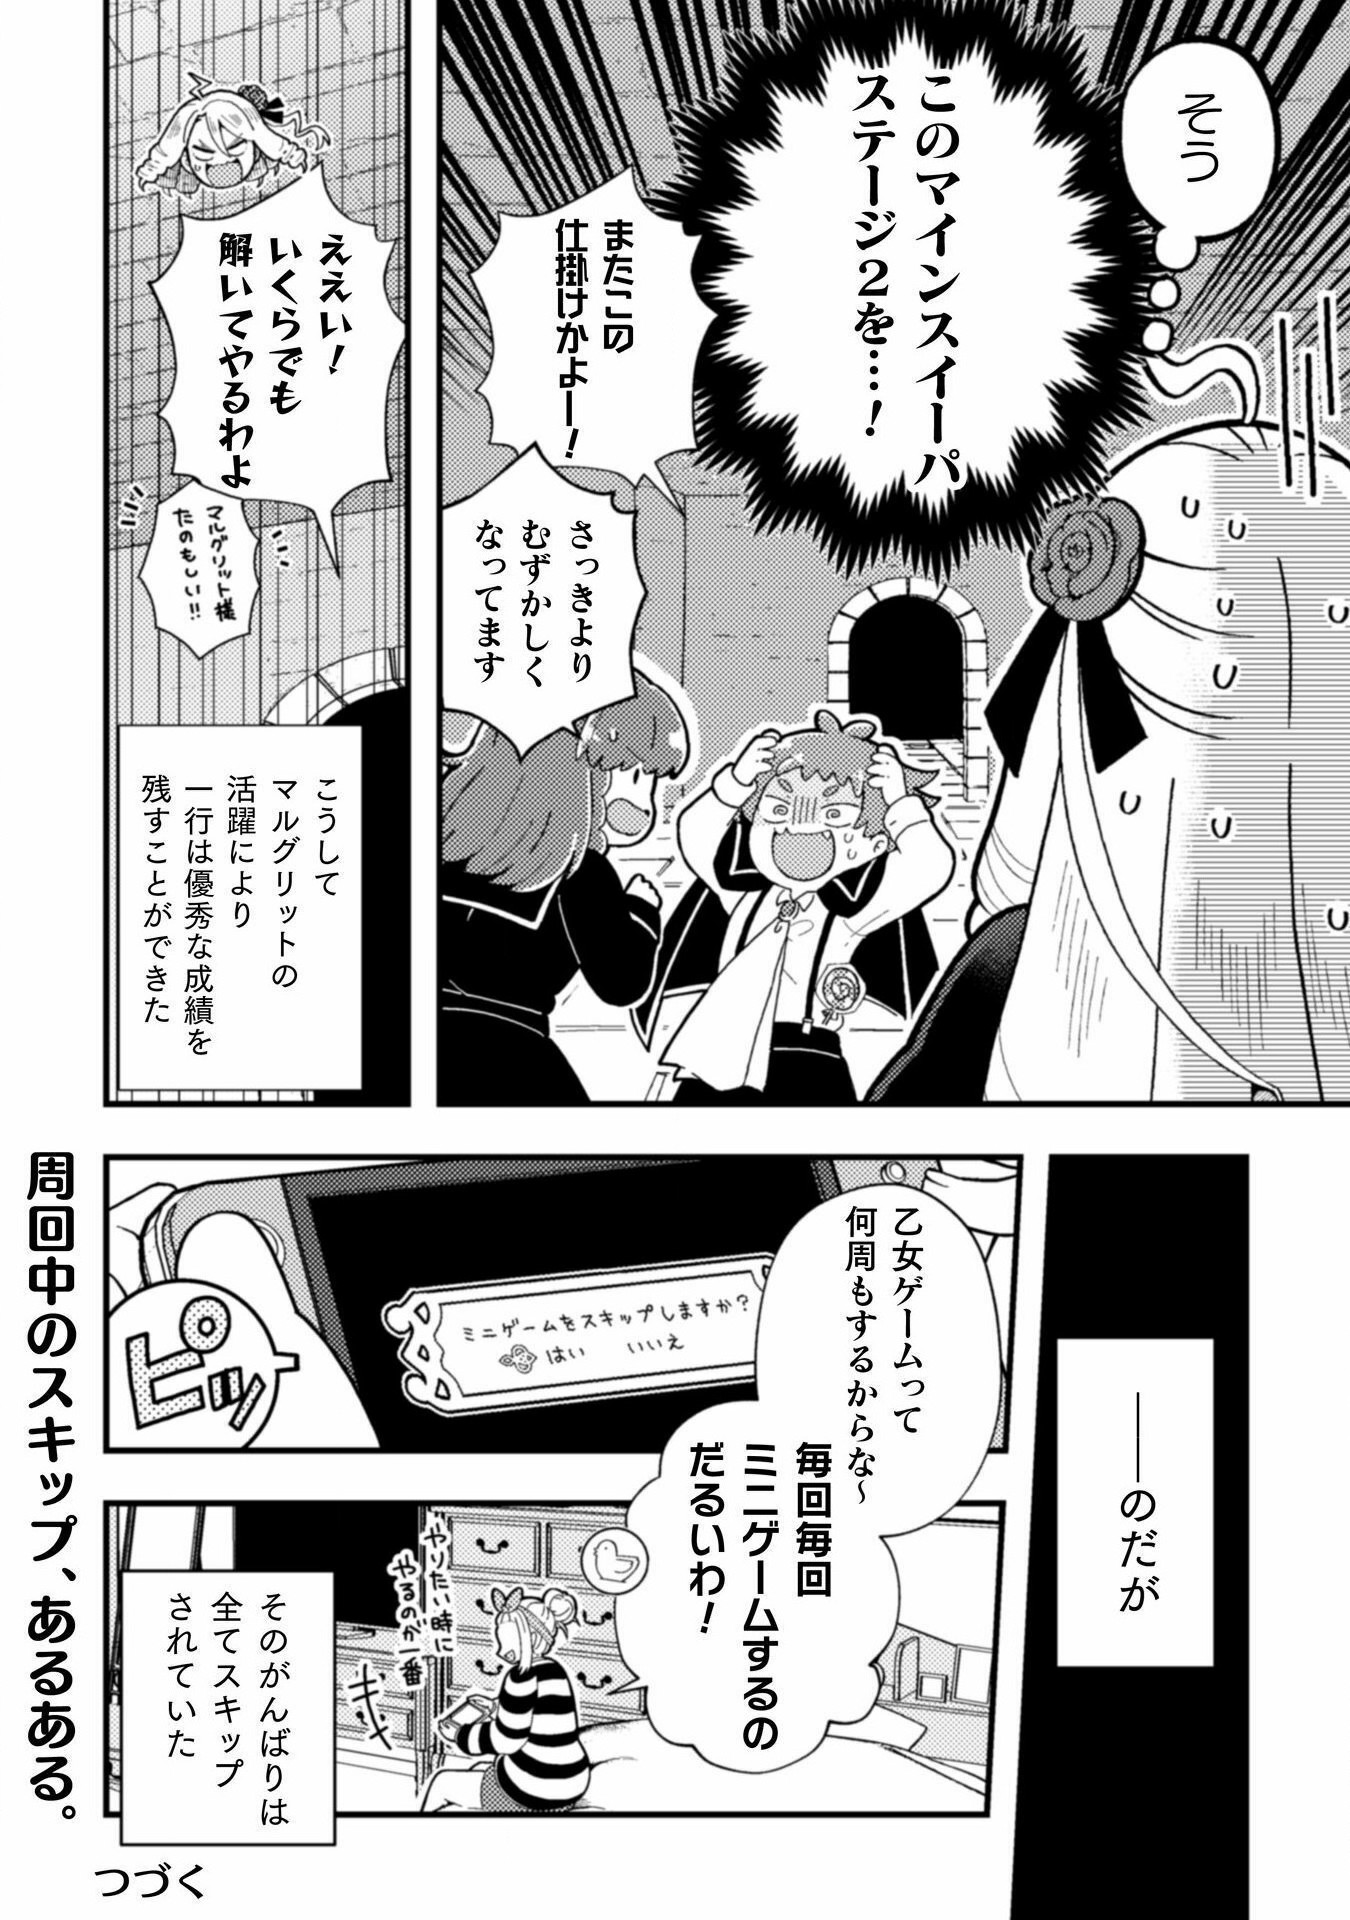 Otome Game no Akuyaku Reijou ni Tensei shitakedo Follower ga Fukyoushiteta Chisiki shikanai - Chapter 17 - Page 28